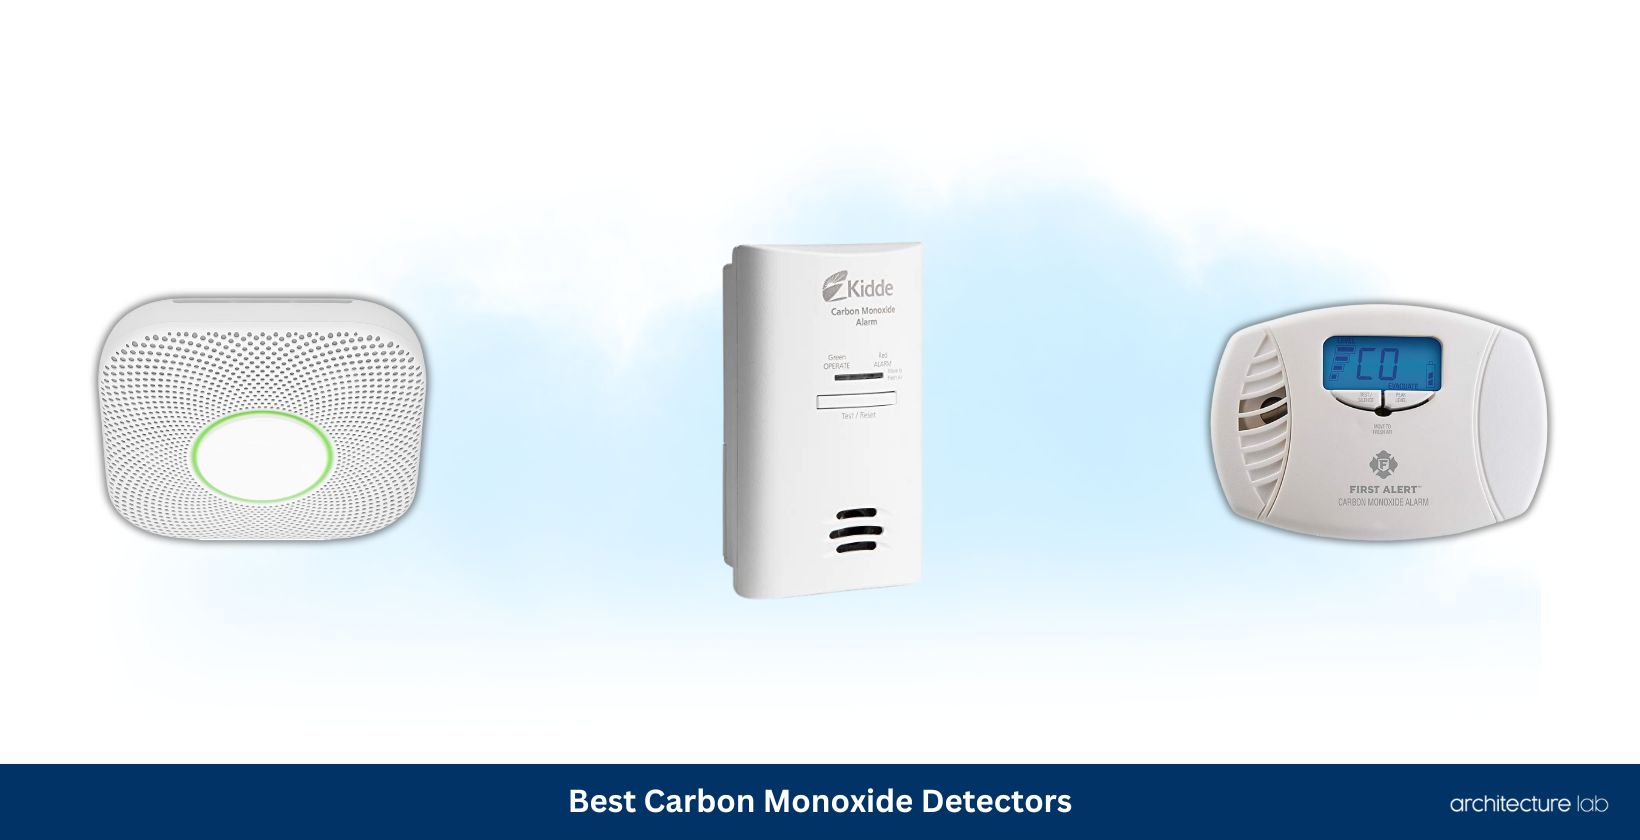 Co2 Detectors 6 Best Carbon Monoxide Detectors Of 2023 Reviews And Buyers Guide 6489